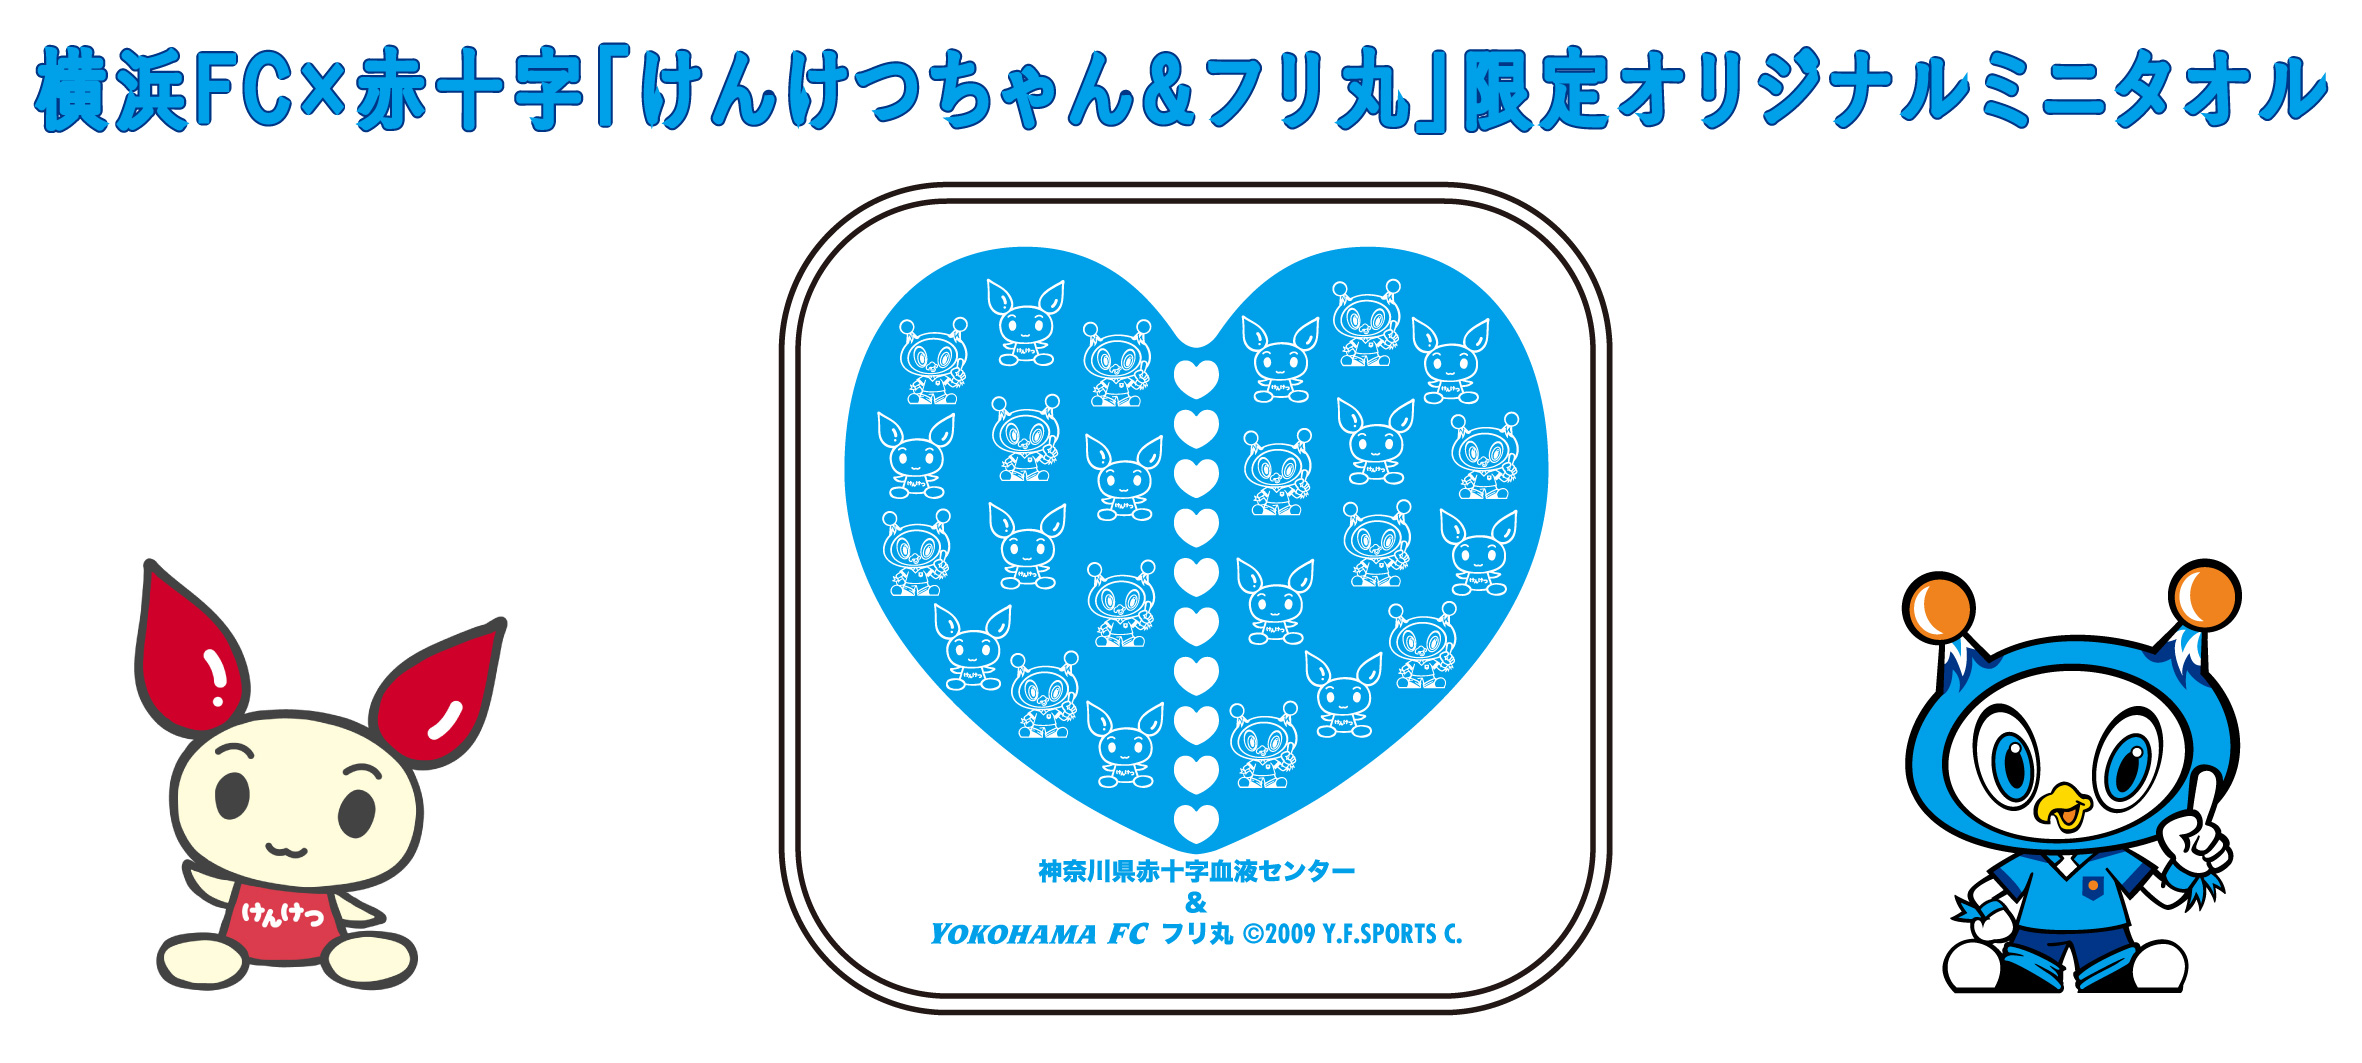 4月3日(土)柏戦 献血応援キャンペーン実施のお知らせ | 横浜FCオフィシャルウェブサイト